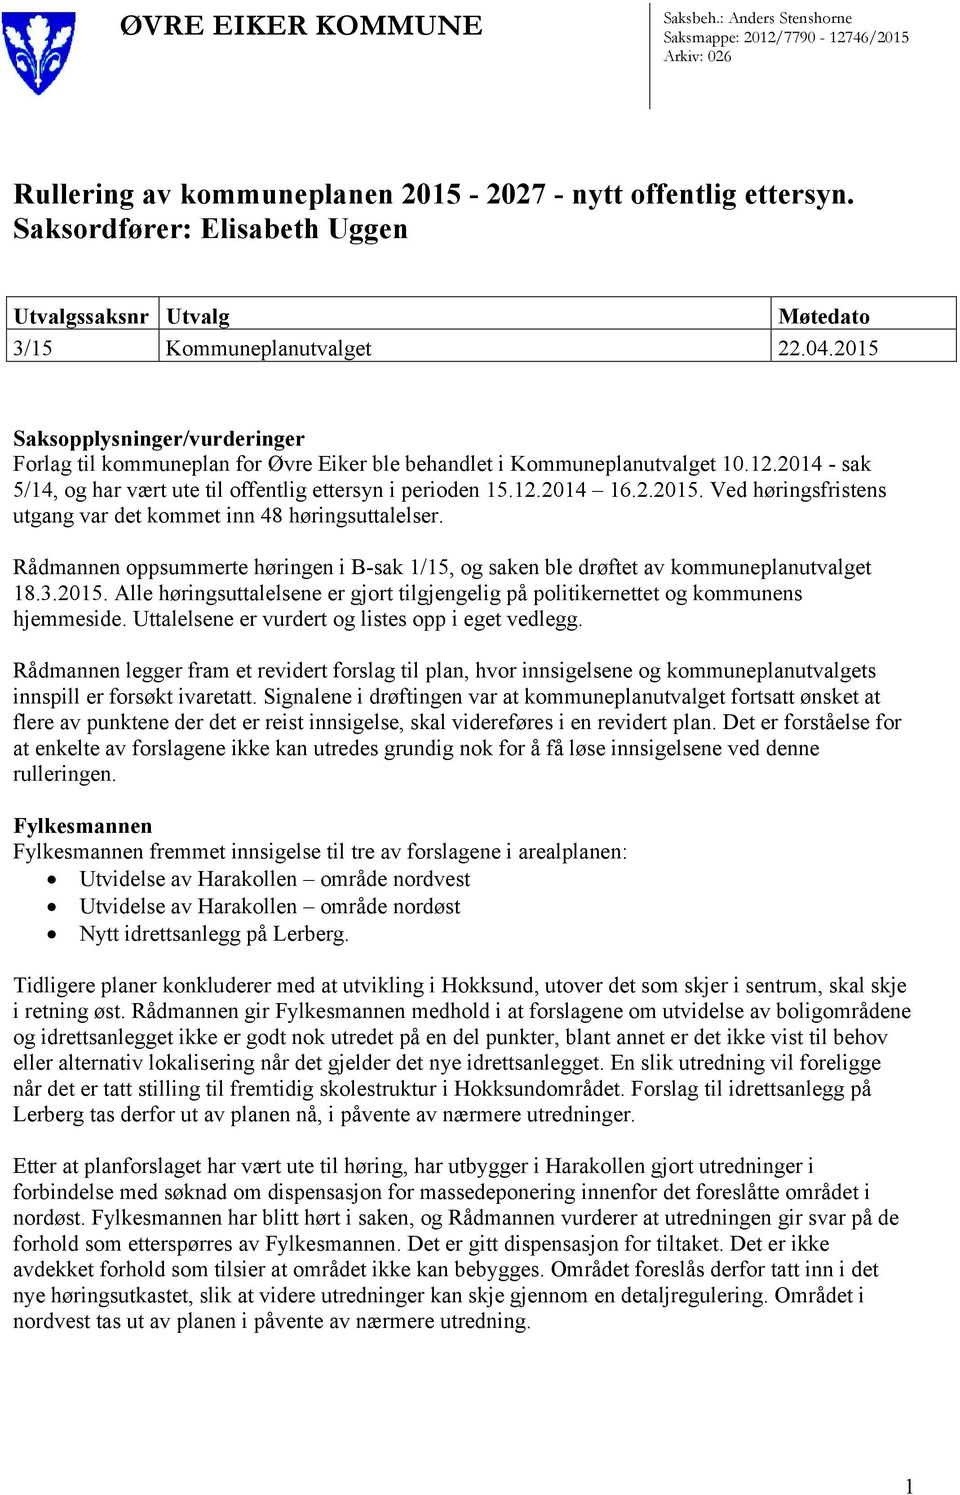 2015 Saksopplysninger/vurderinger Forlag til kommuneplan for Øvre Eiker ble behandlet i Kommuneplanutvalget 10.12.2014 - sak 5/14, og har vært ute til offentlig ettersyn i perioden 15.12.2014 16.2.2015. Ved høringsfristens utgang var det kommet inn 48 høringsuttalelser.